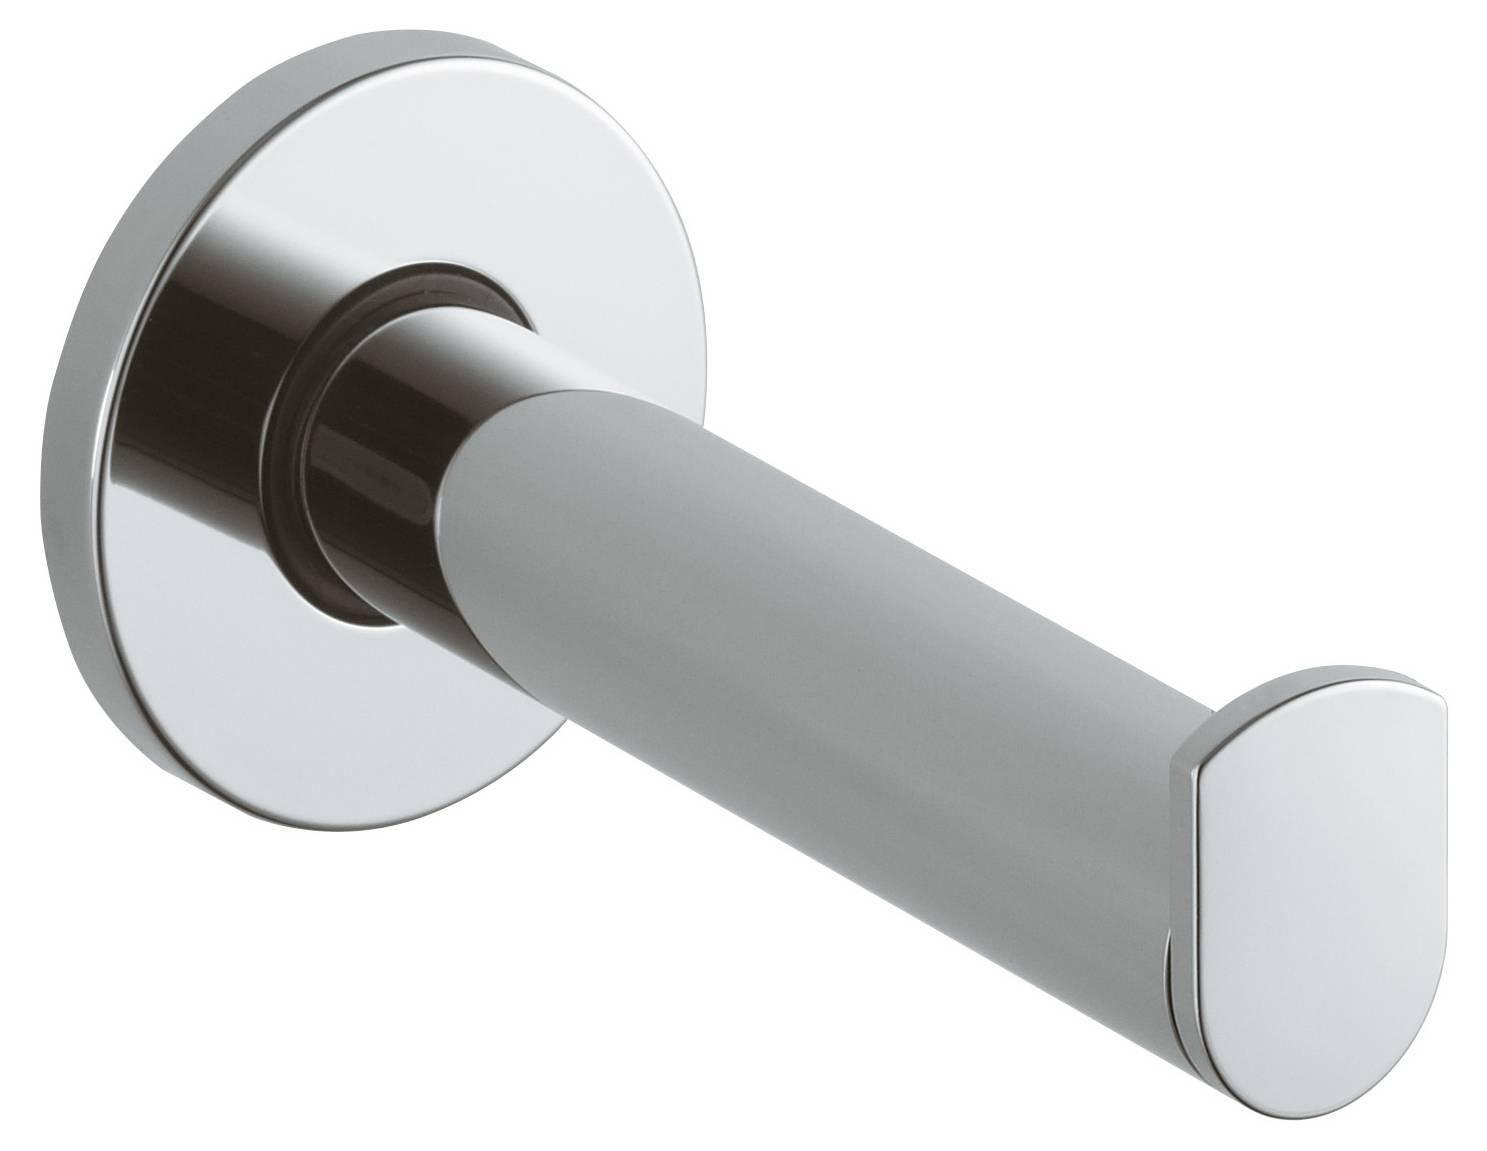 Spare Toilet Roll Holder - PLAN - Toilet roll holder